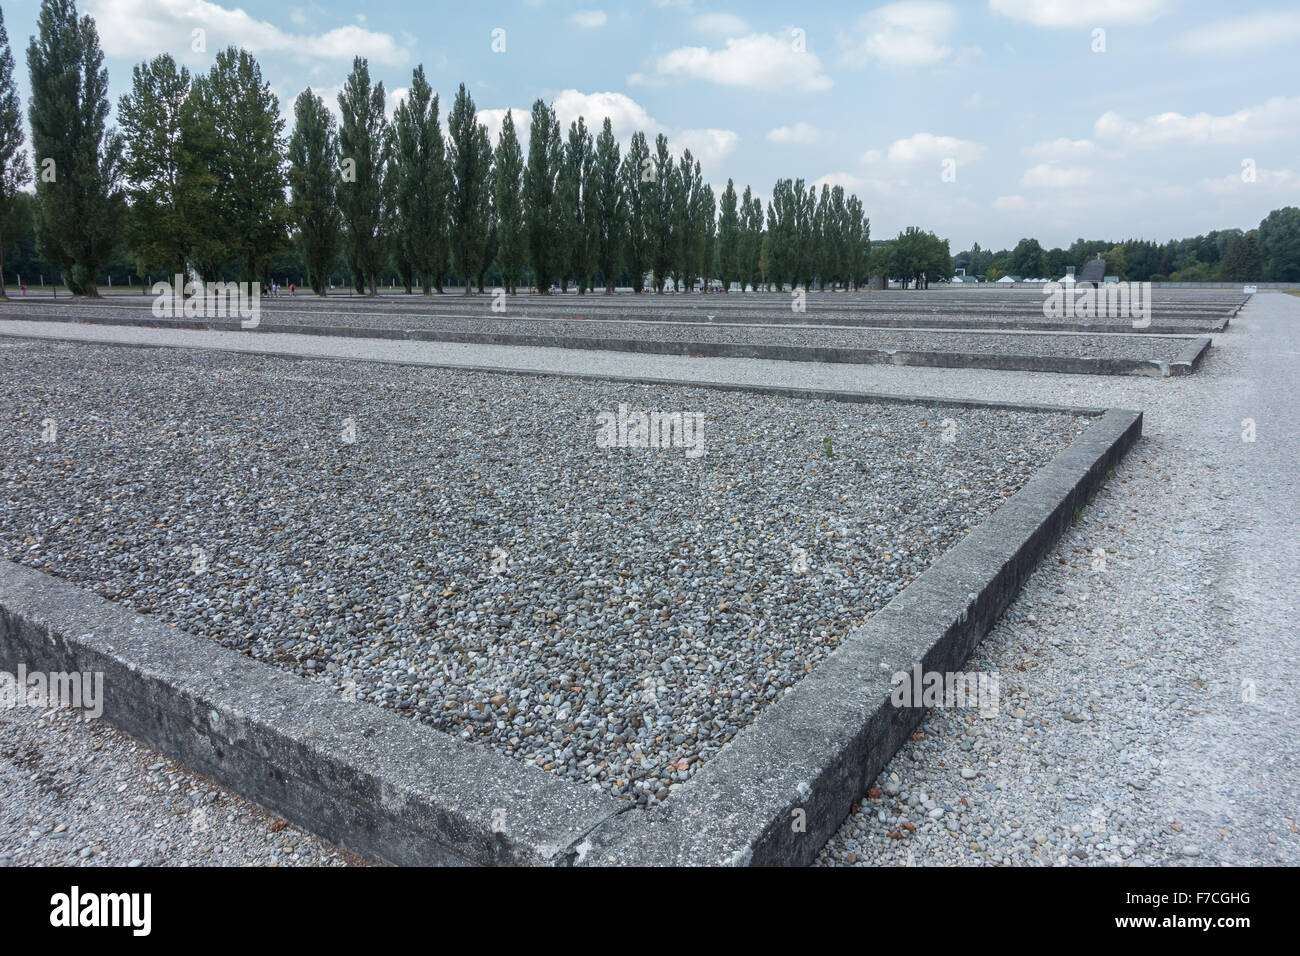 Ancien site de l'homme de huttes dans le camp de concentration de Dachau près de Munich, Allemagne. Le site est maintenant un mémorial et un musée. Banque D'Images